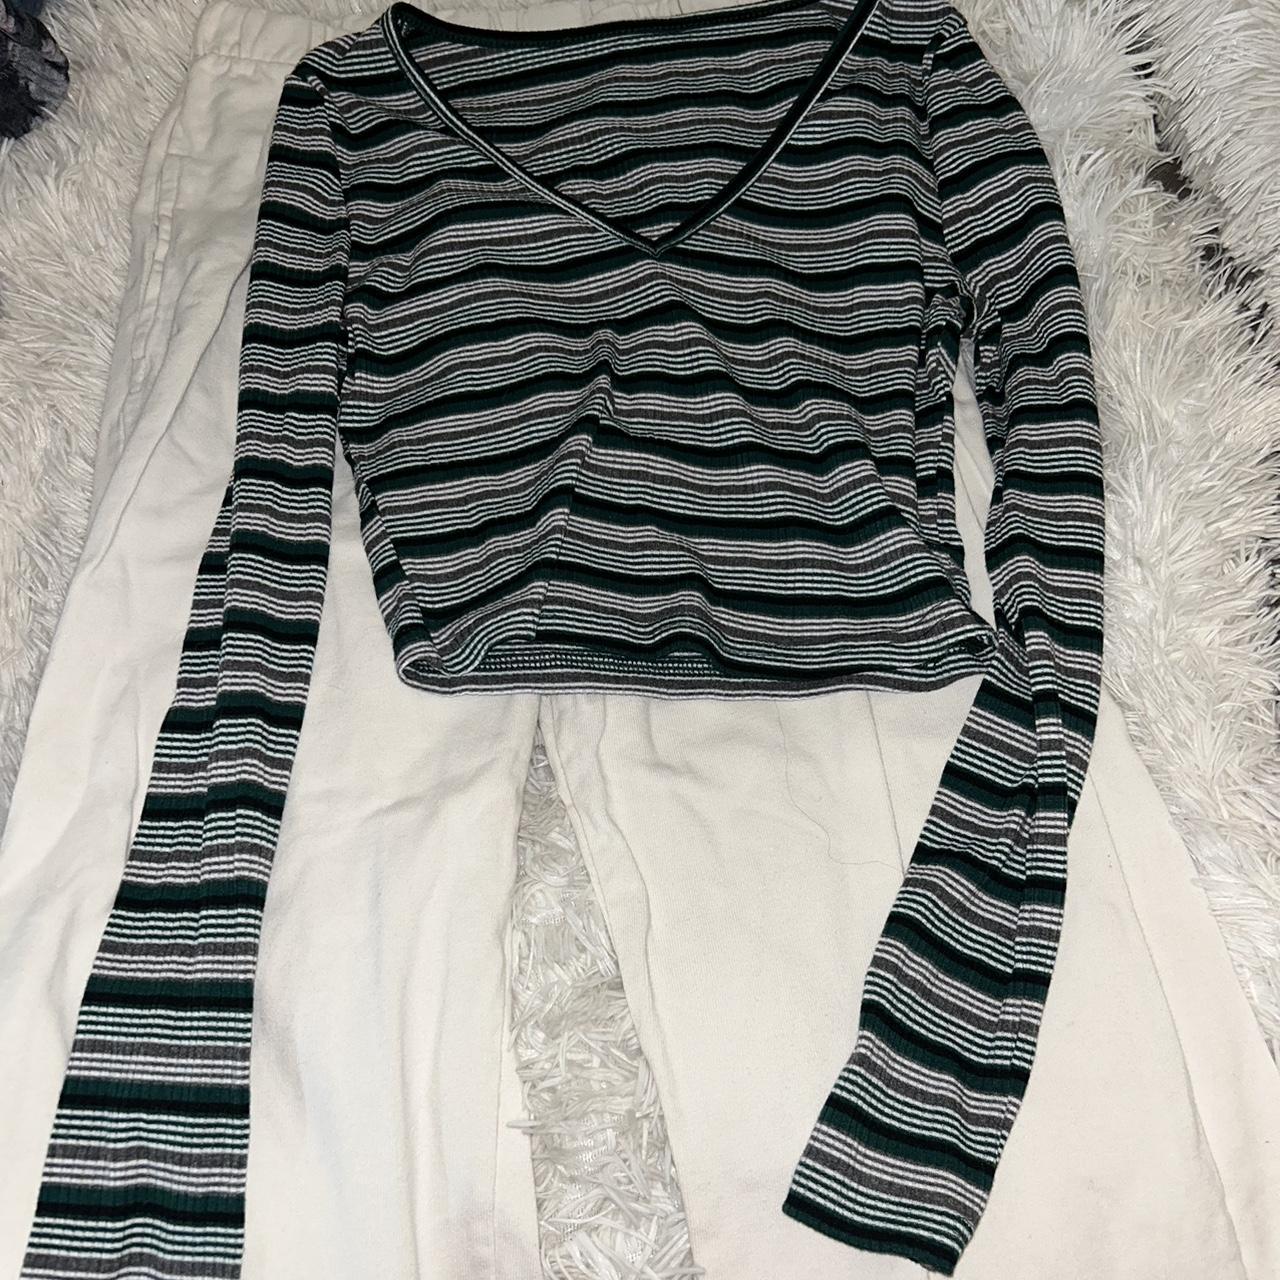 Green striped shirt - Depop